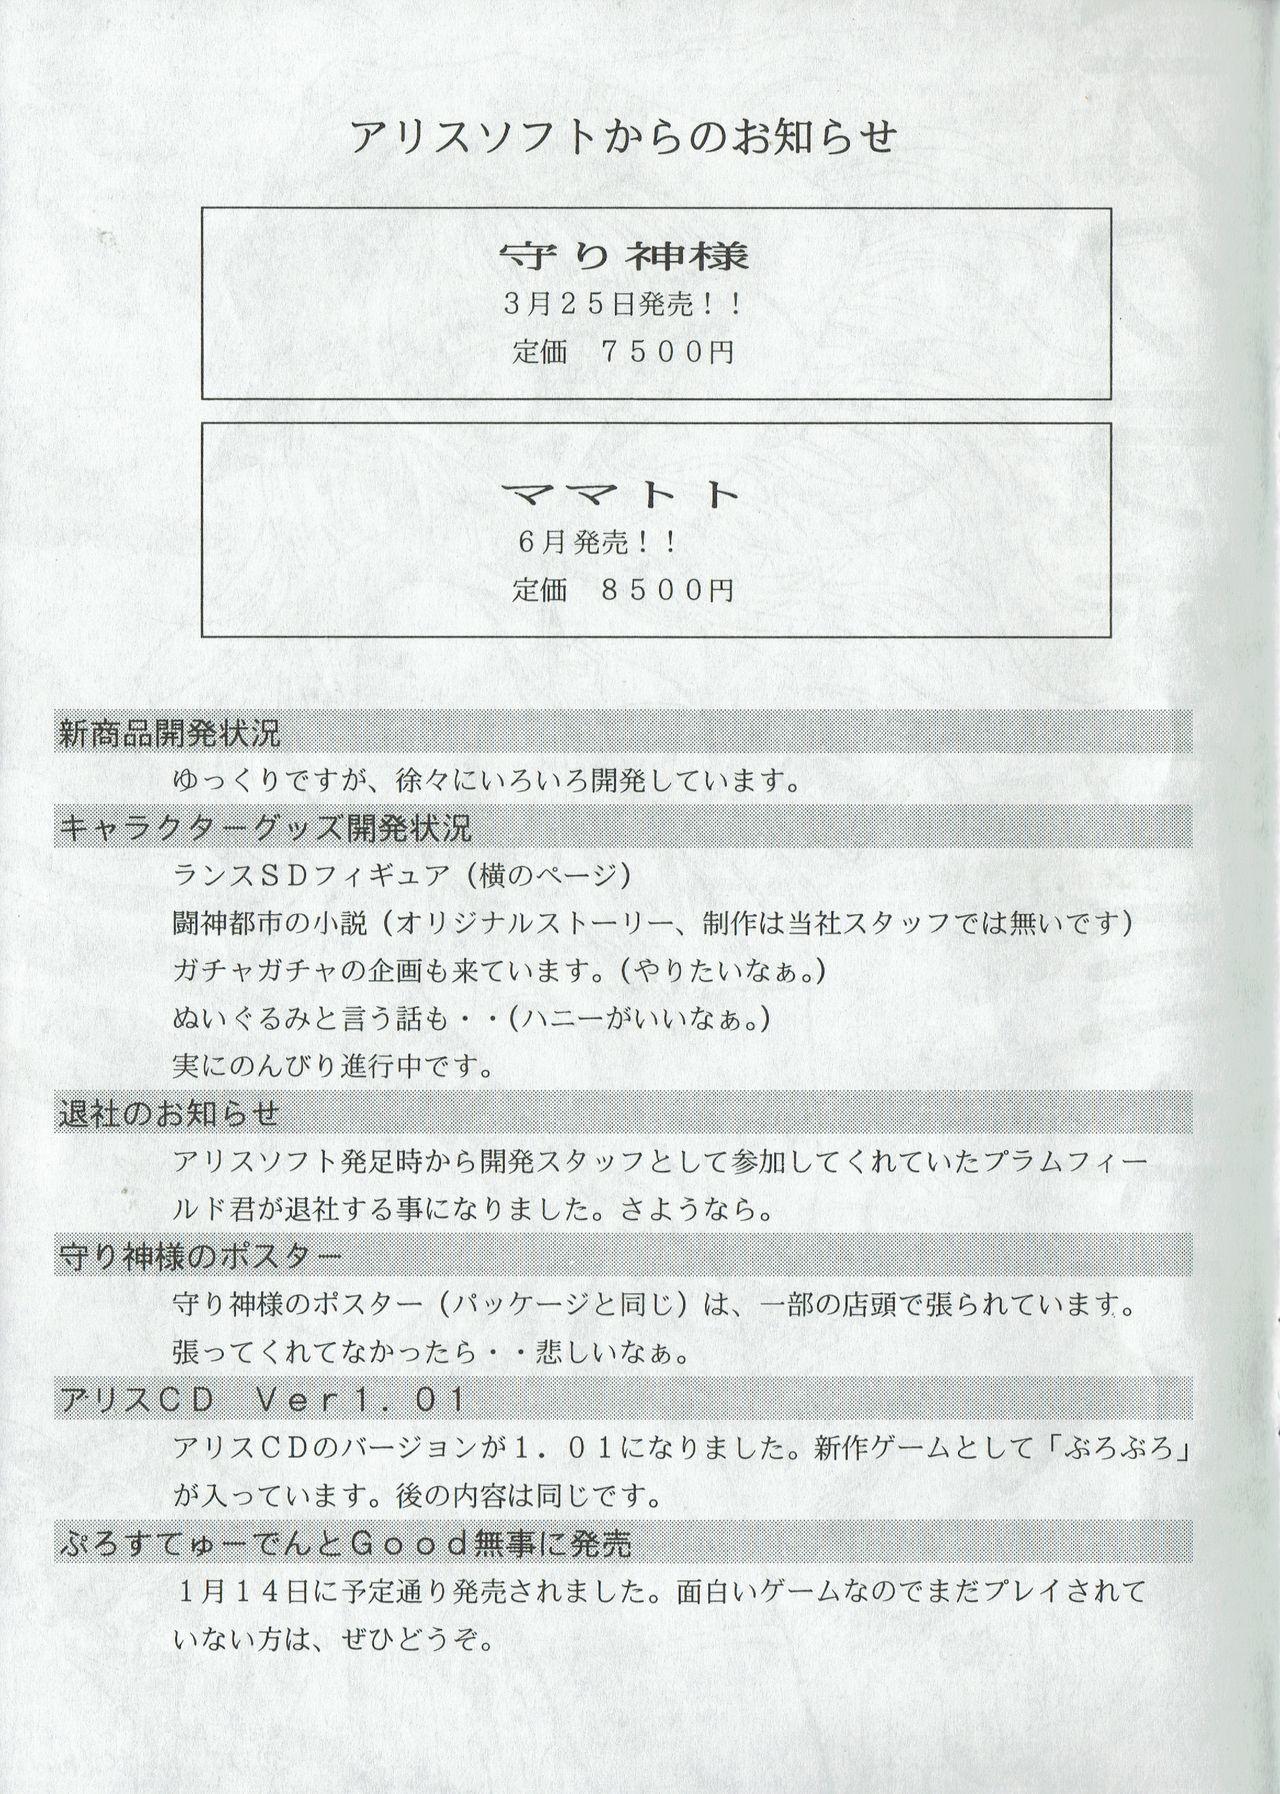 Arisu no Denchi Bakudan Vol. 04 1